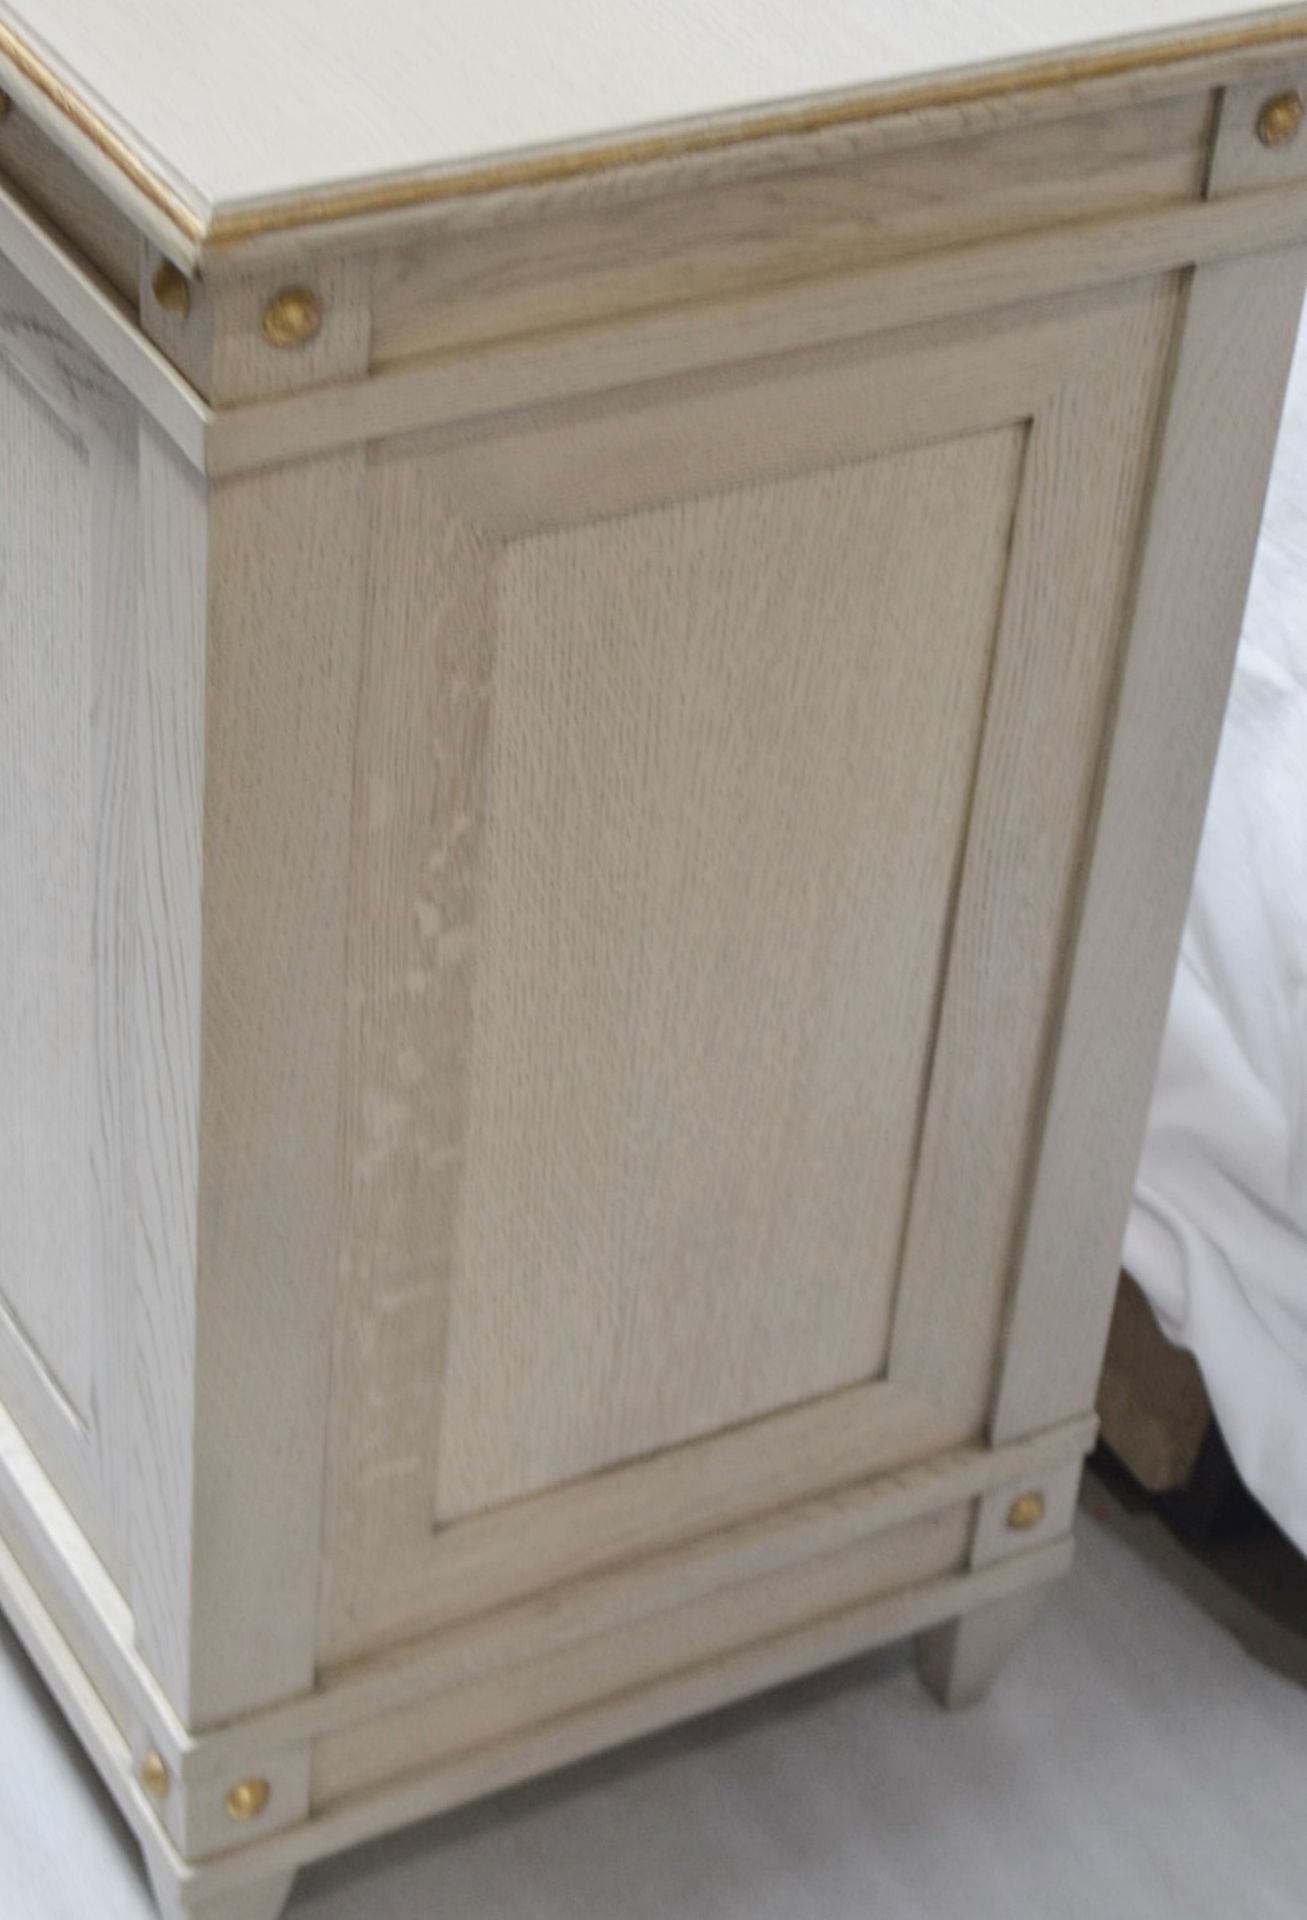 1 x JUSTIN VAN BREDA 'Monty' Designer Regency-inspired 3-Door Sideboard - Original RRP £9,700 - Image 7 of 16